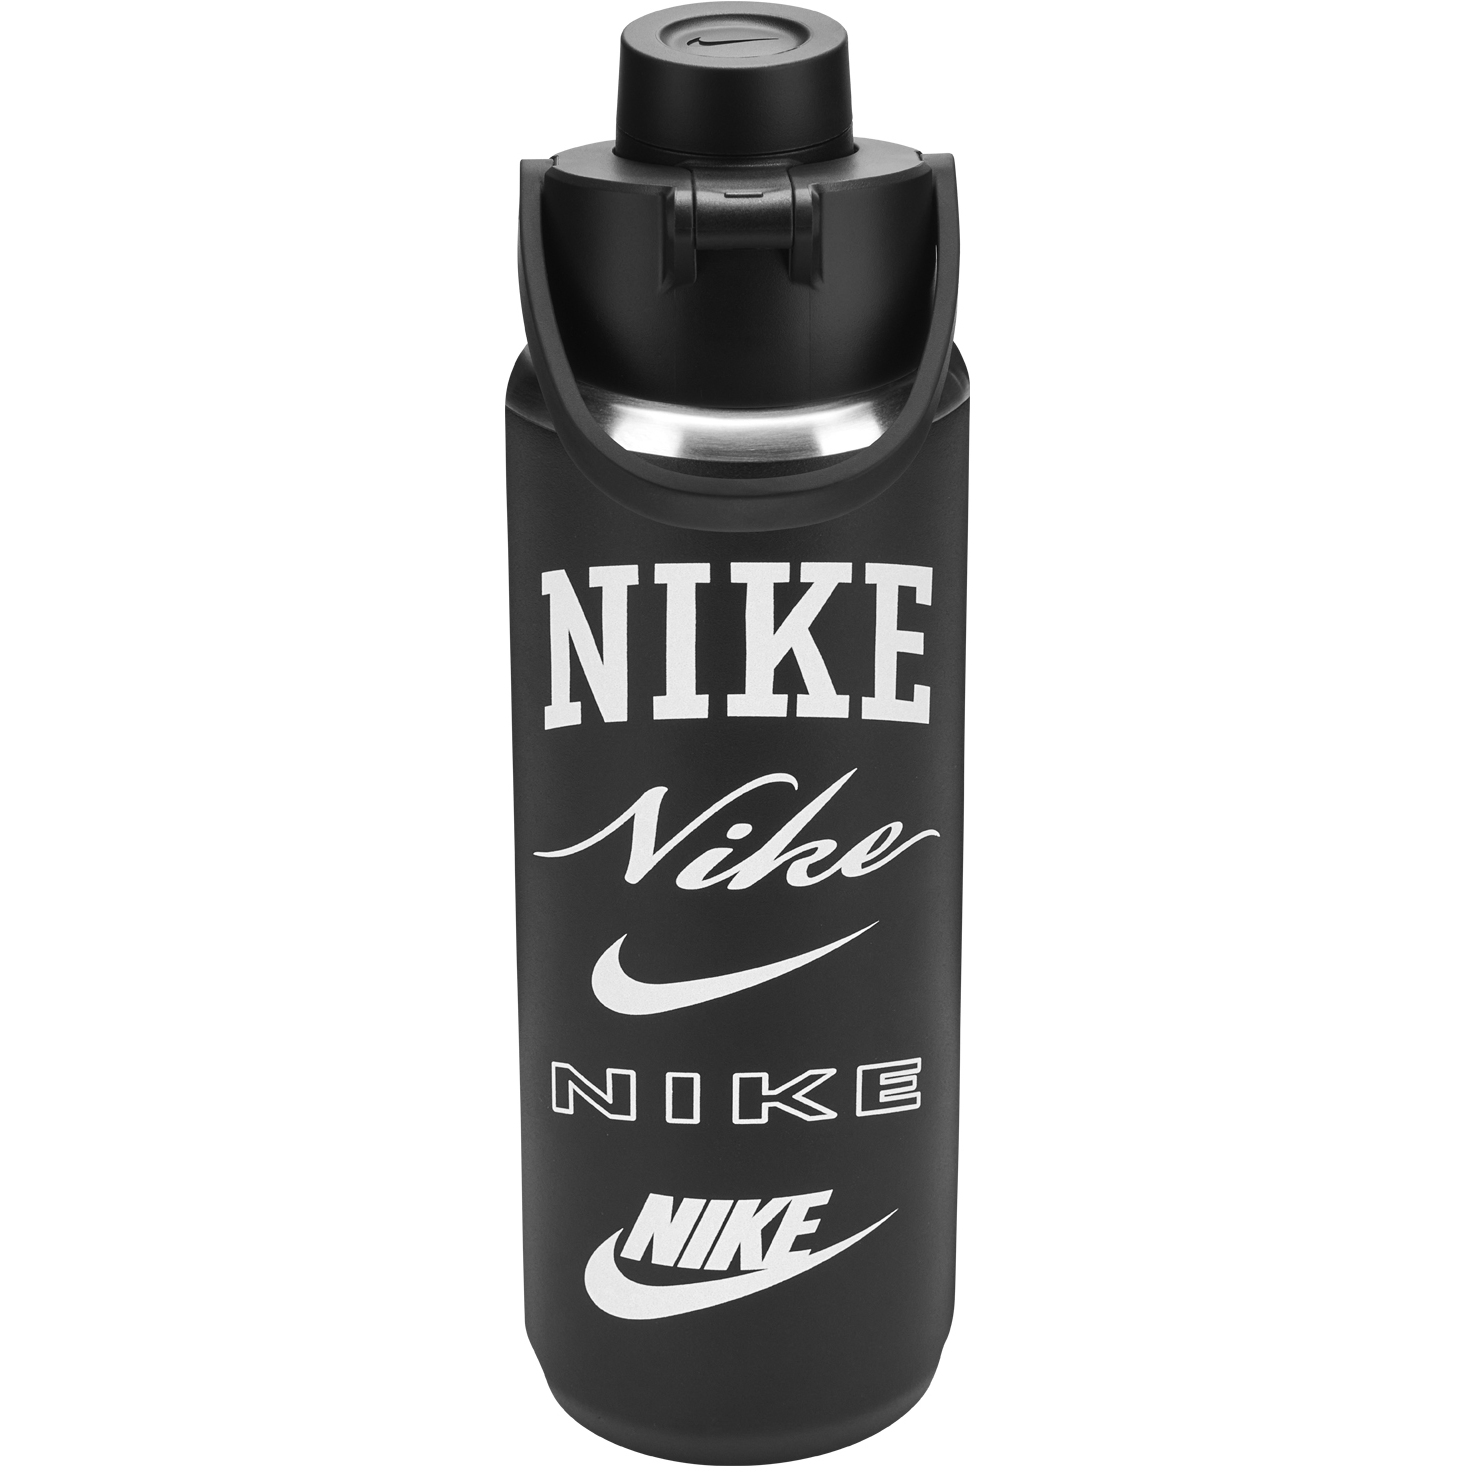 Produktbild von Nike Edelstahl Recharge Trinkflasche 24 oz / 709ml - schwarz/schwarz/weiß/weiß 087